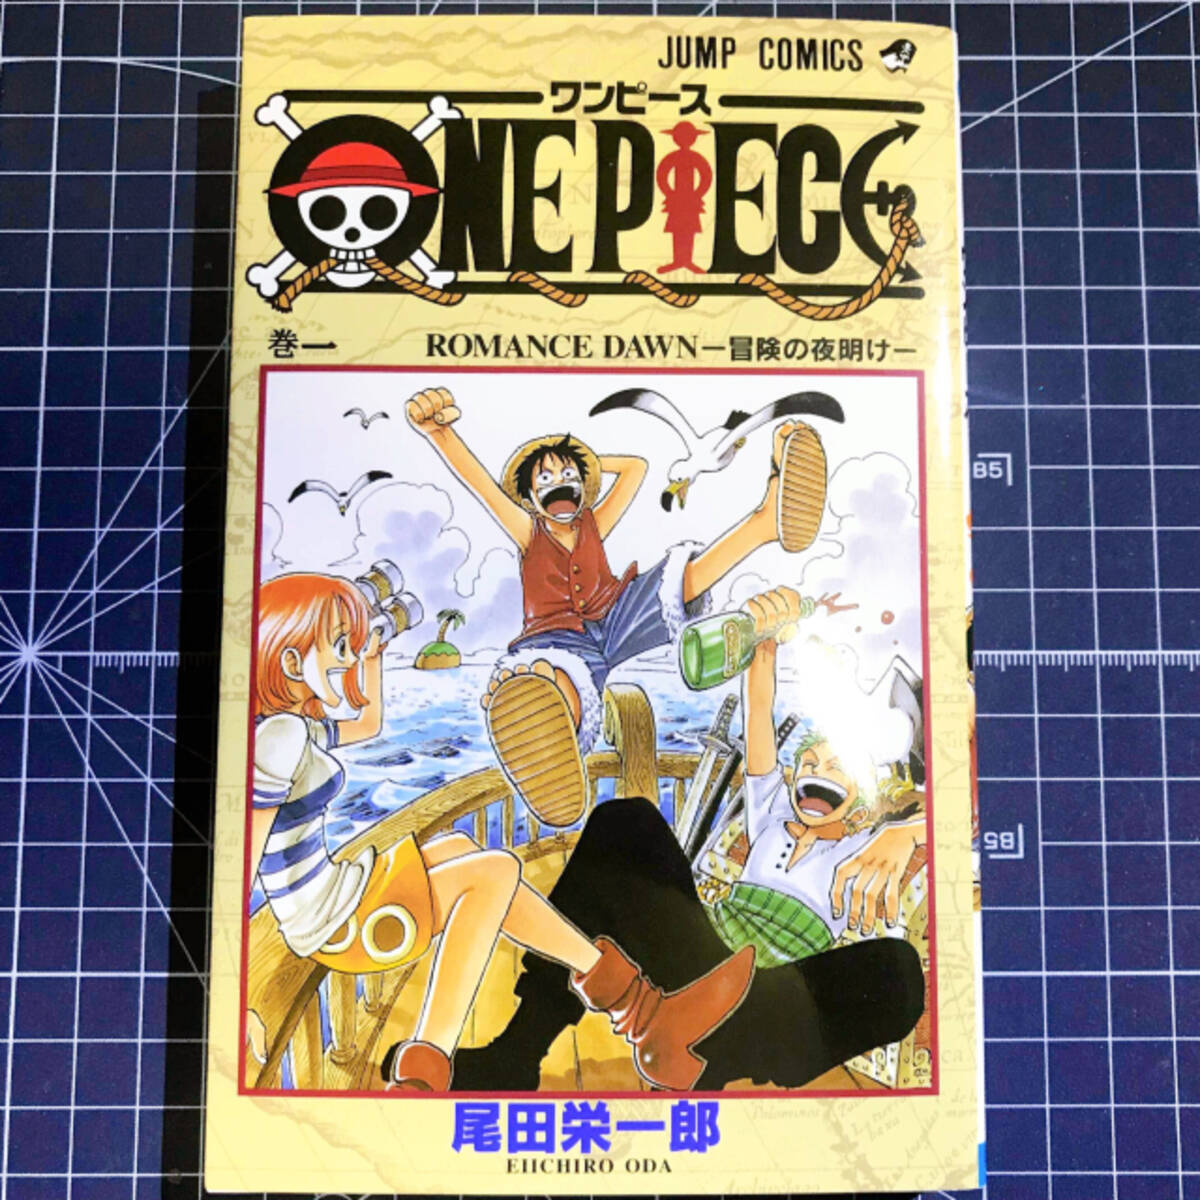 One Piece コビーは 少将 だった 95巻で修正された設定とセリフ 21年3月18日 エキサイトニュース